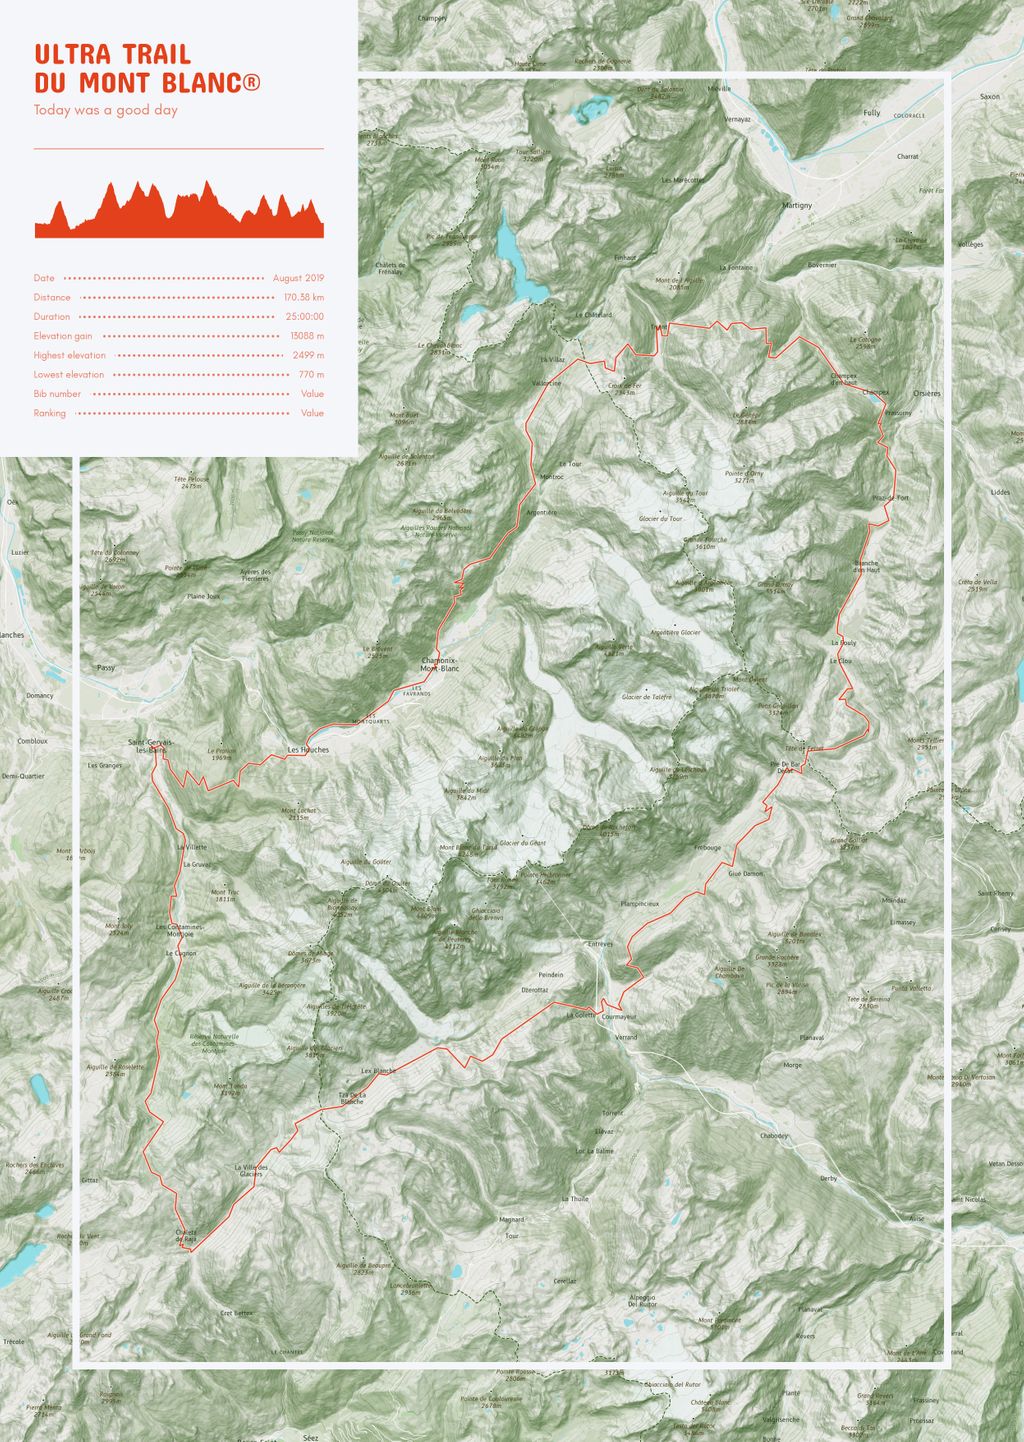 Póster con un mapa de Ultra Trail 
du Mont Blanc®